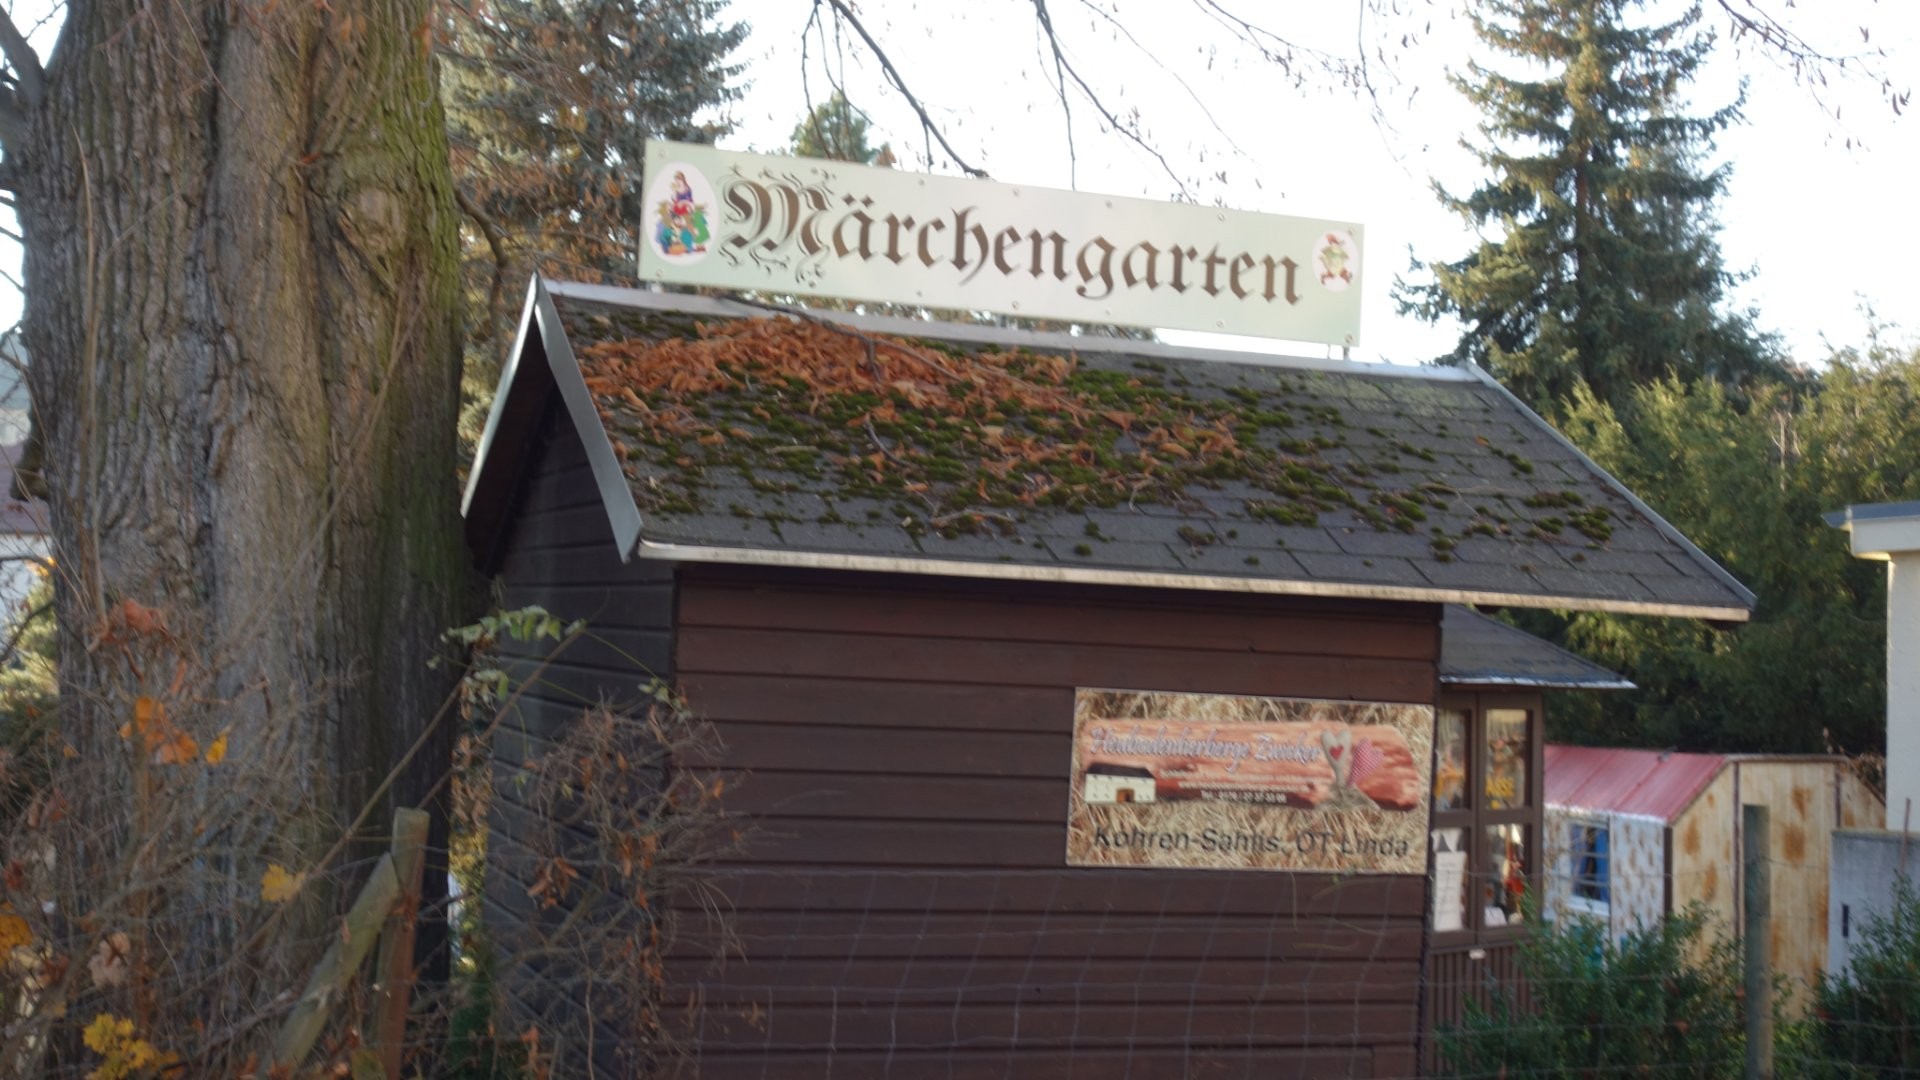 miniaturen-und-maerchengarten-350.JPG